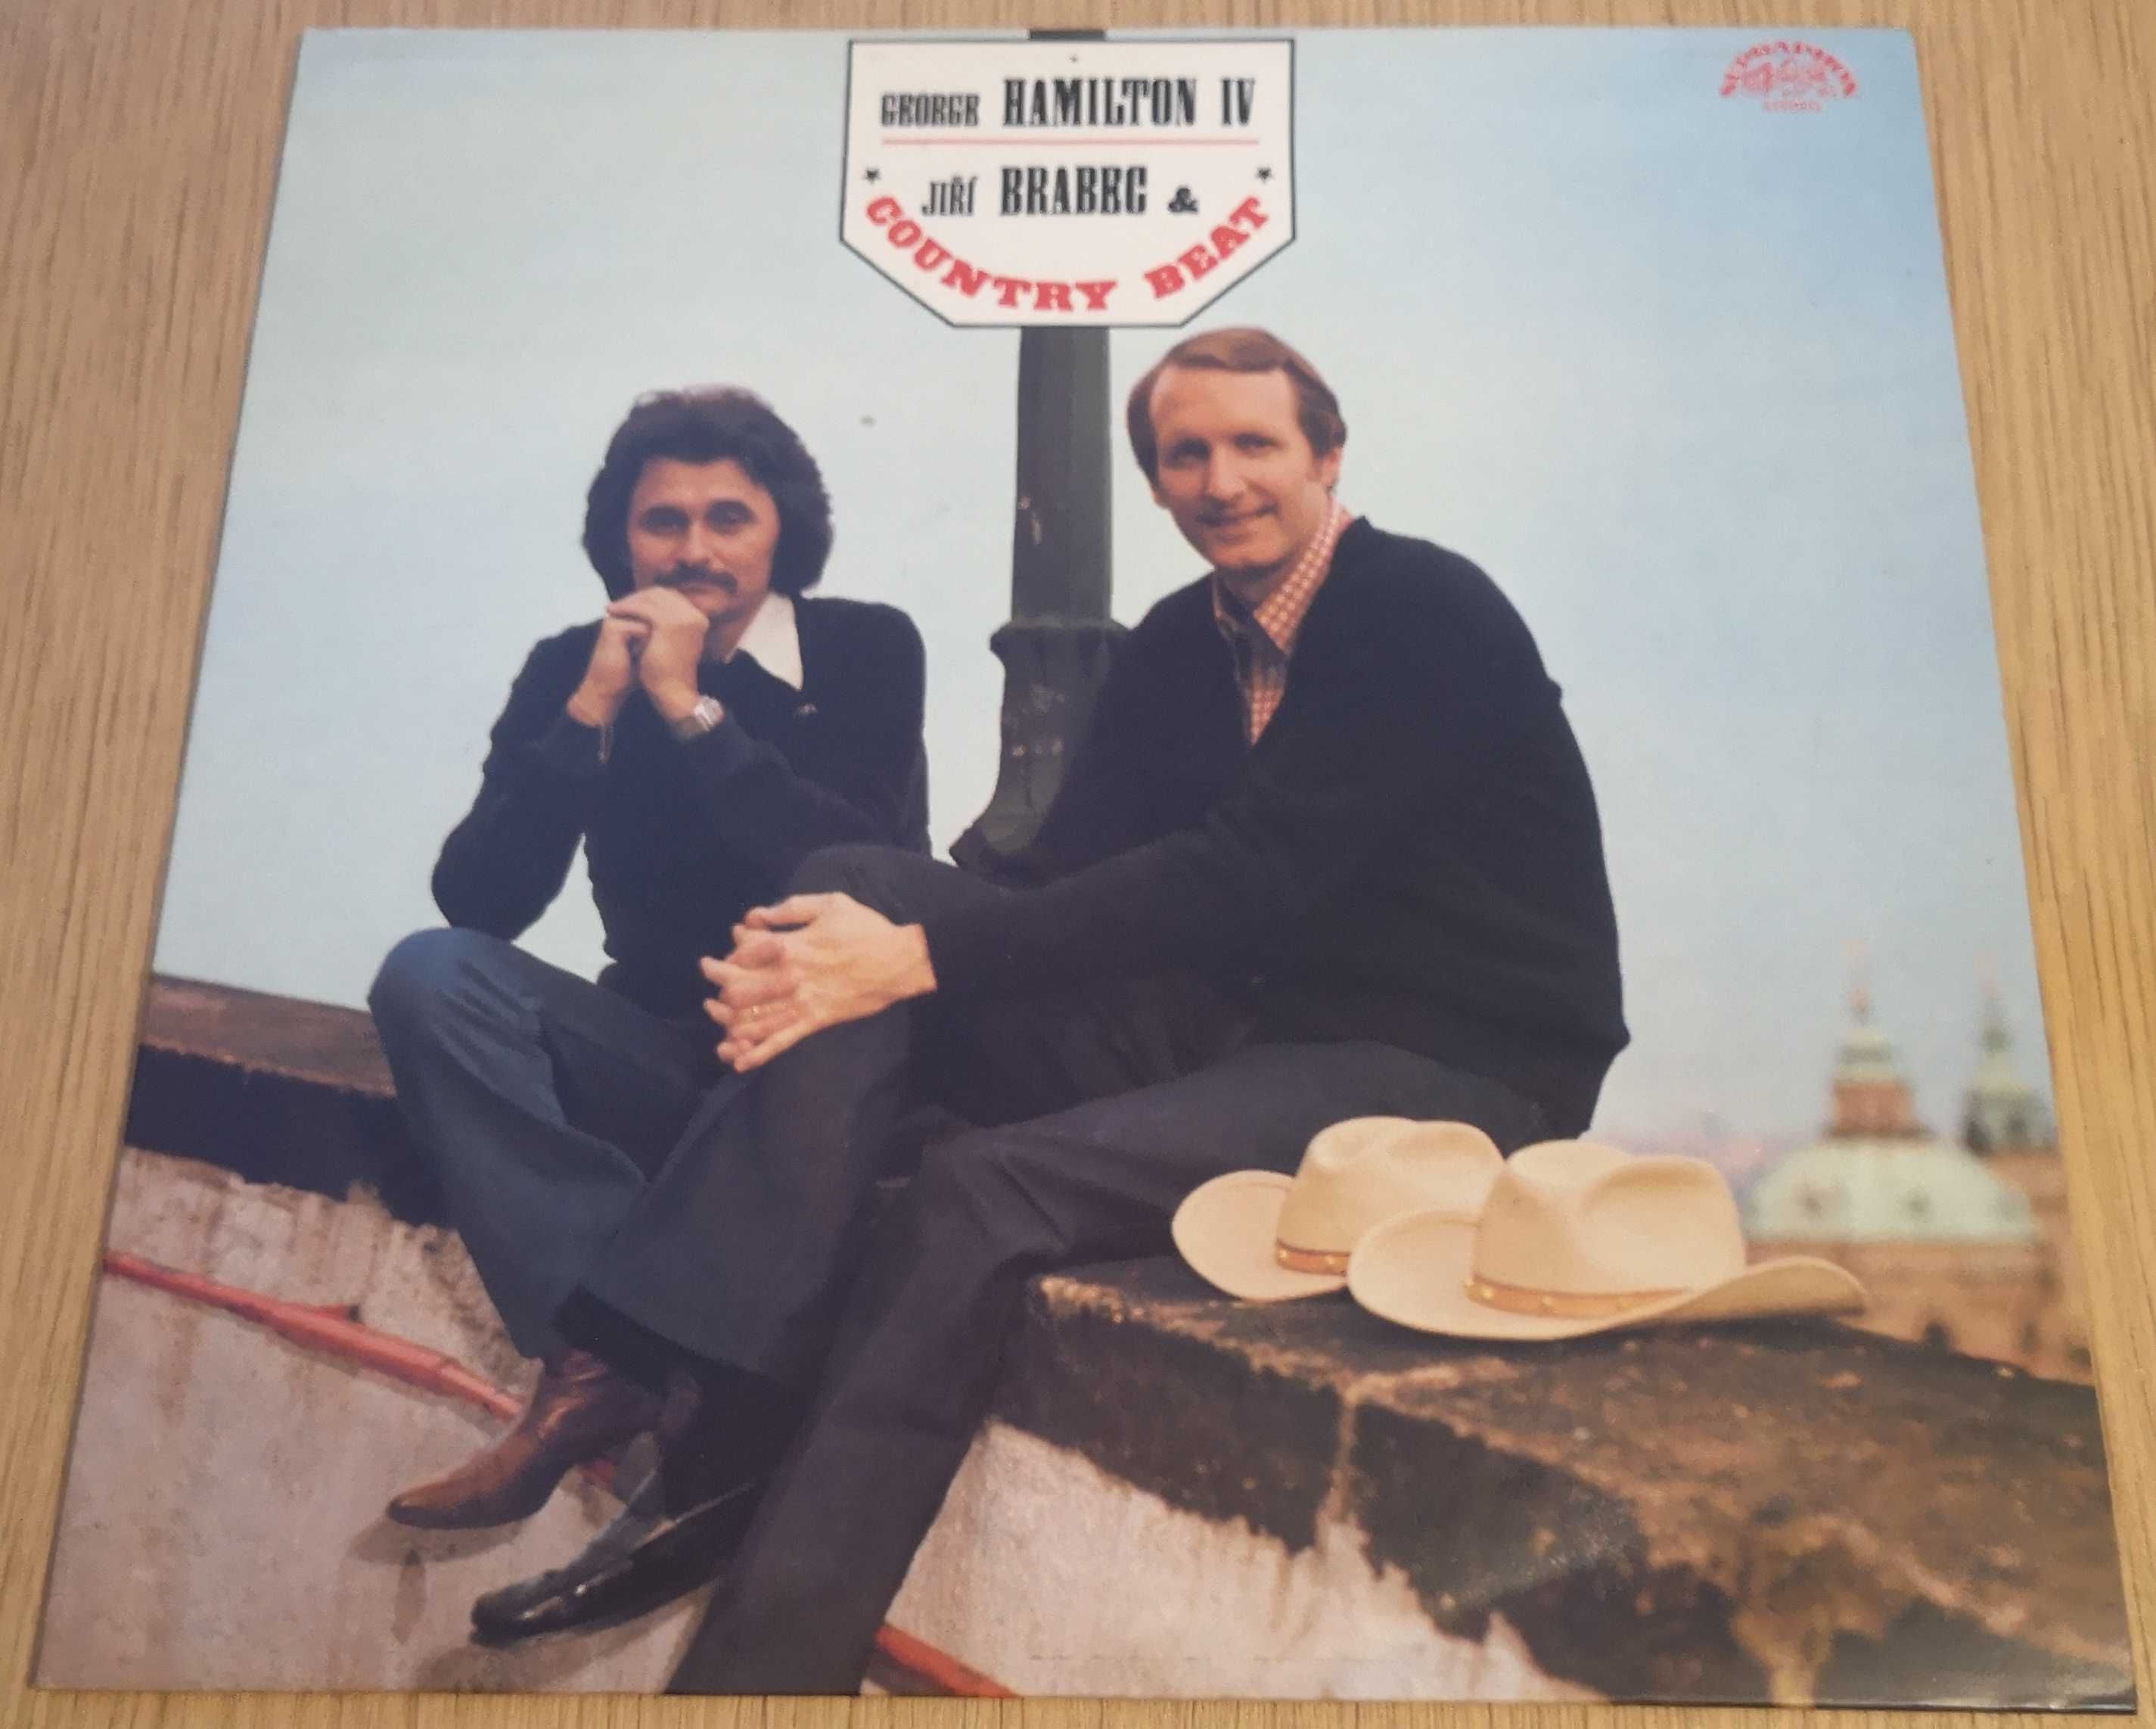 George Hamilton IV, Jiří Brabec & Country Beat, Vinyl